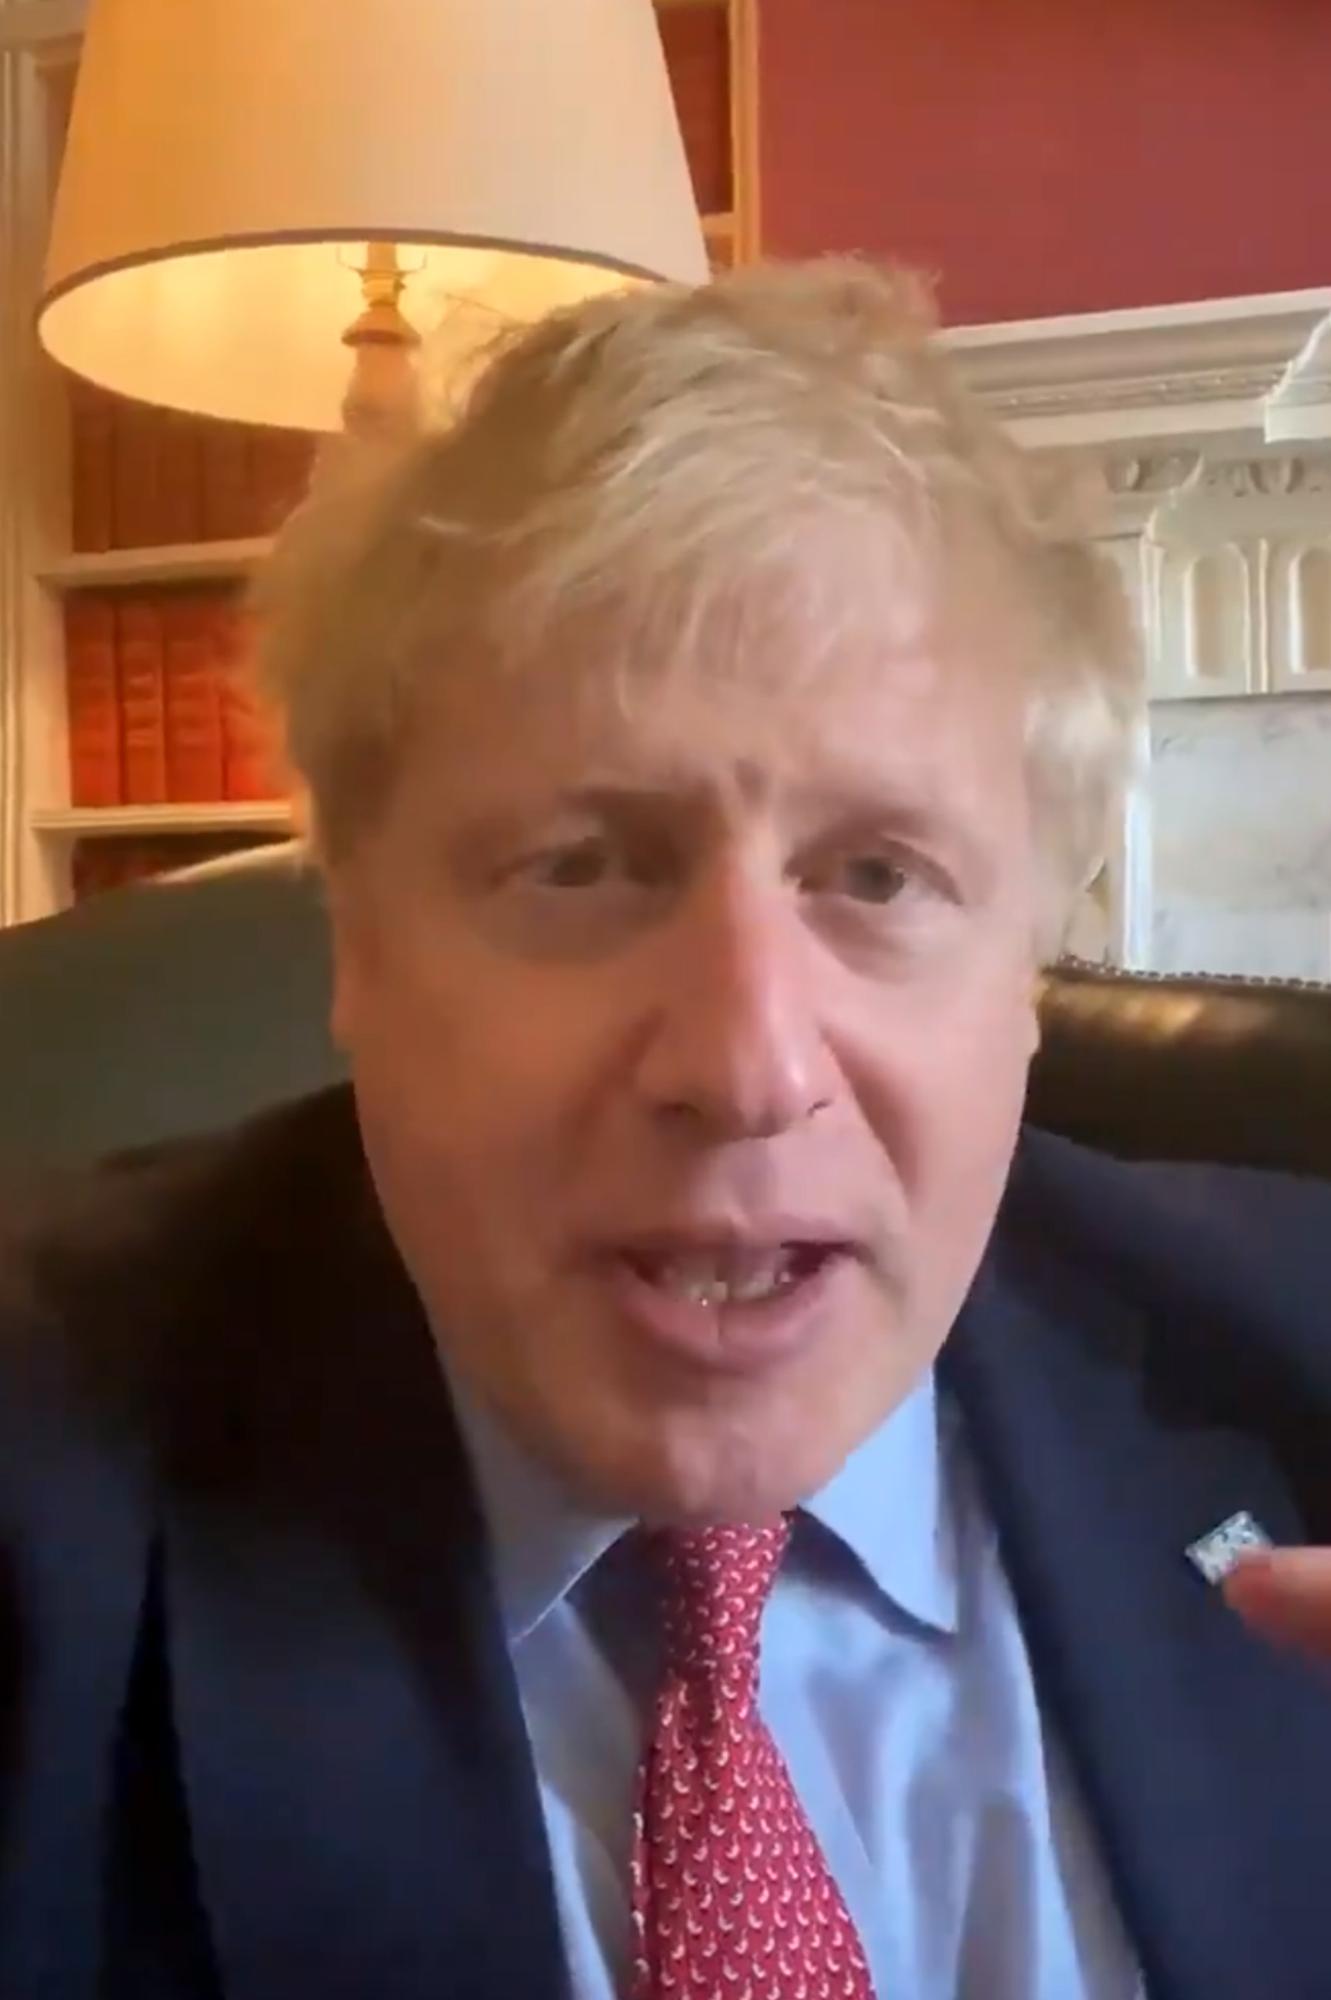 Le 27 mars, Boris Johnson annonçait depuis le 10 Downing Street qu'il était positif au Covid-19. [AFP - 10 Downing Street]